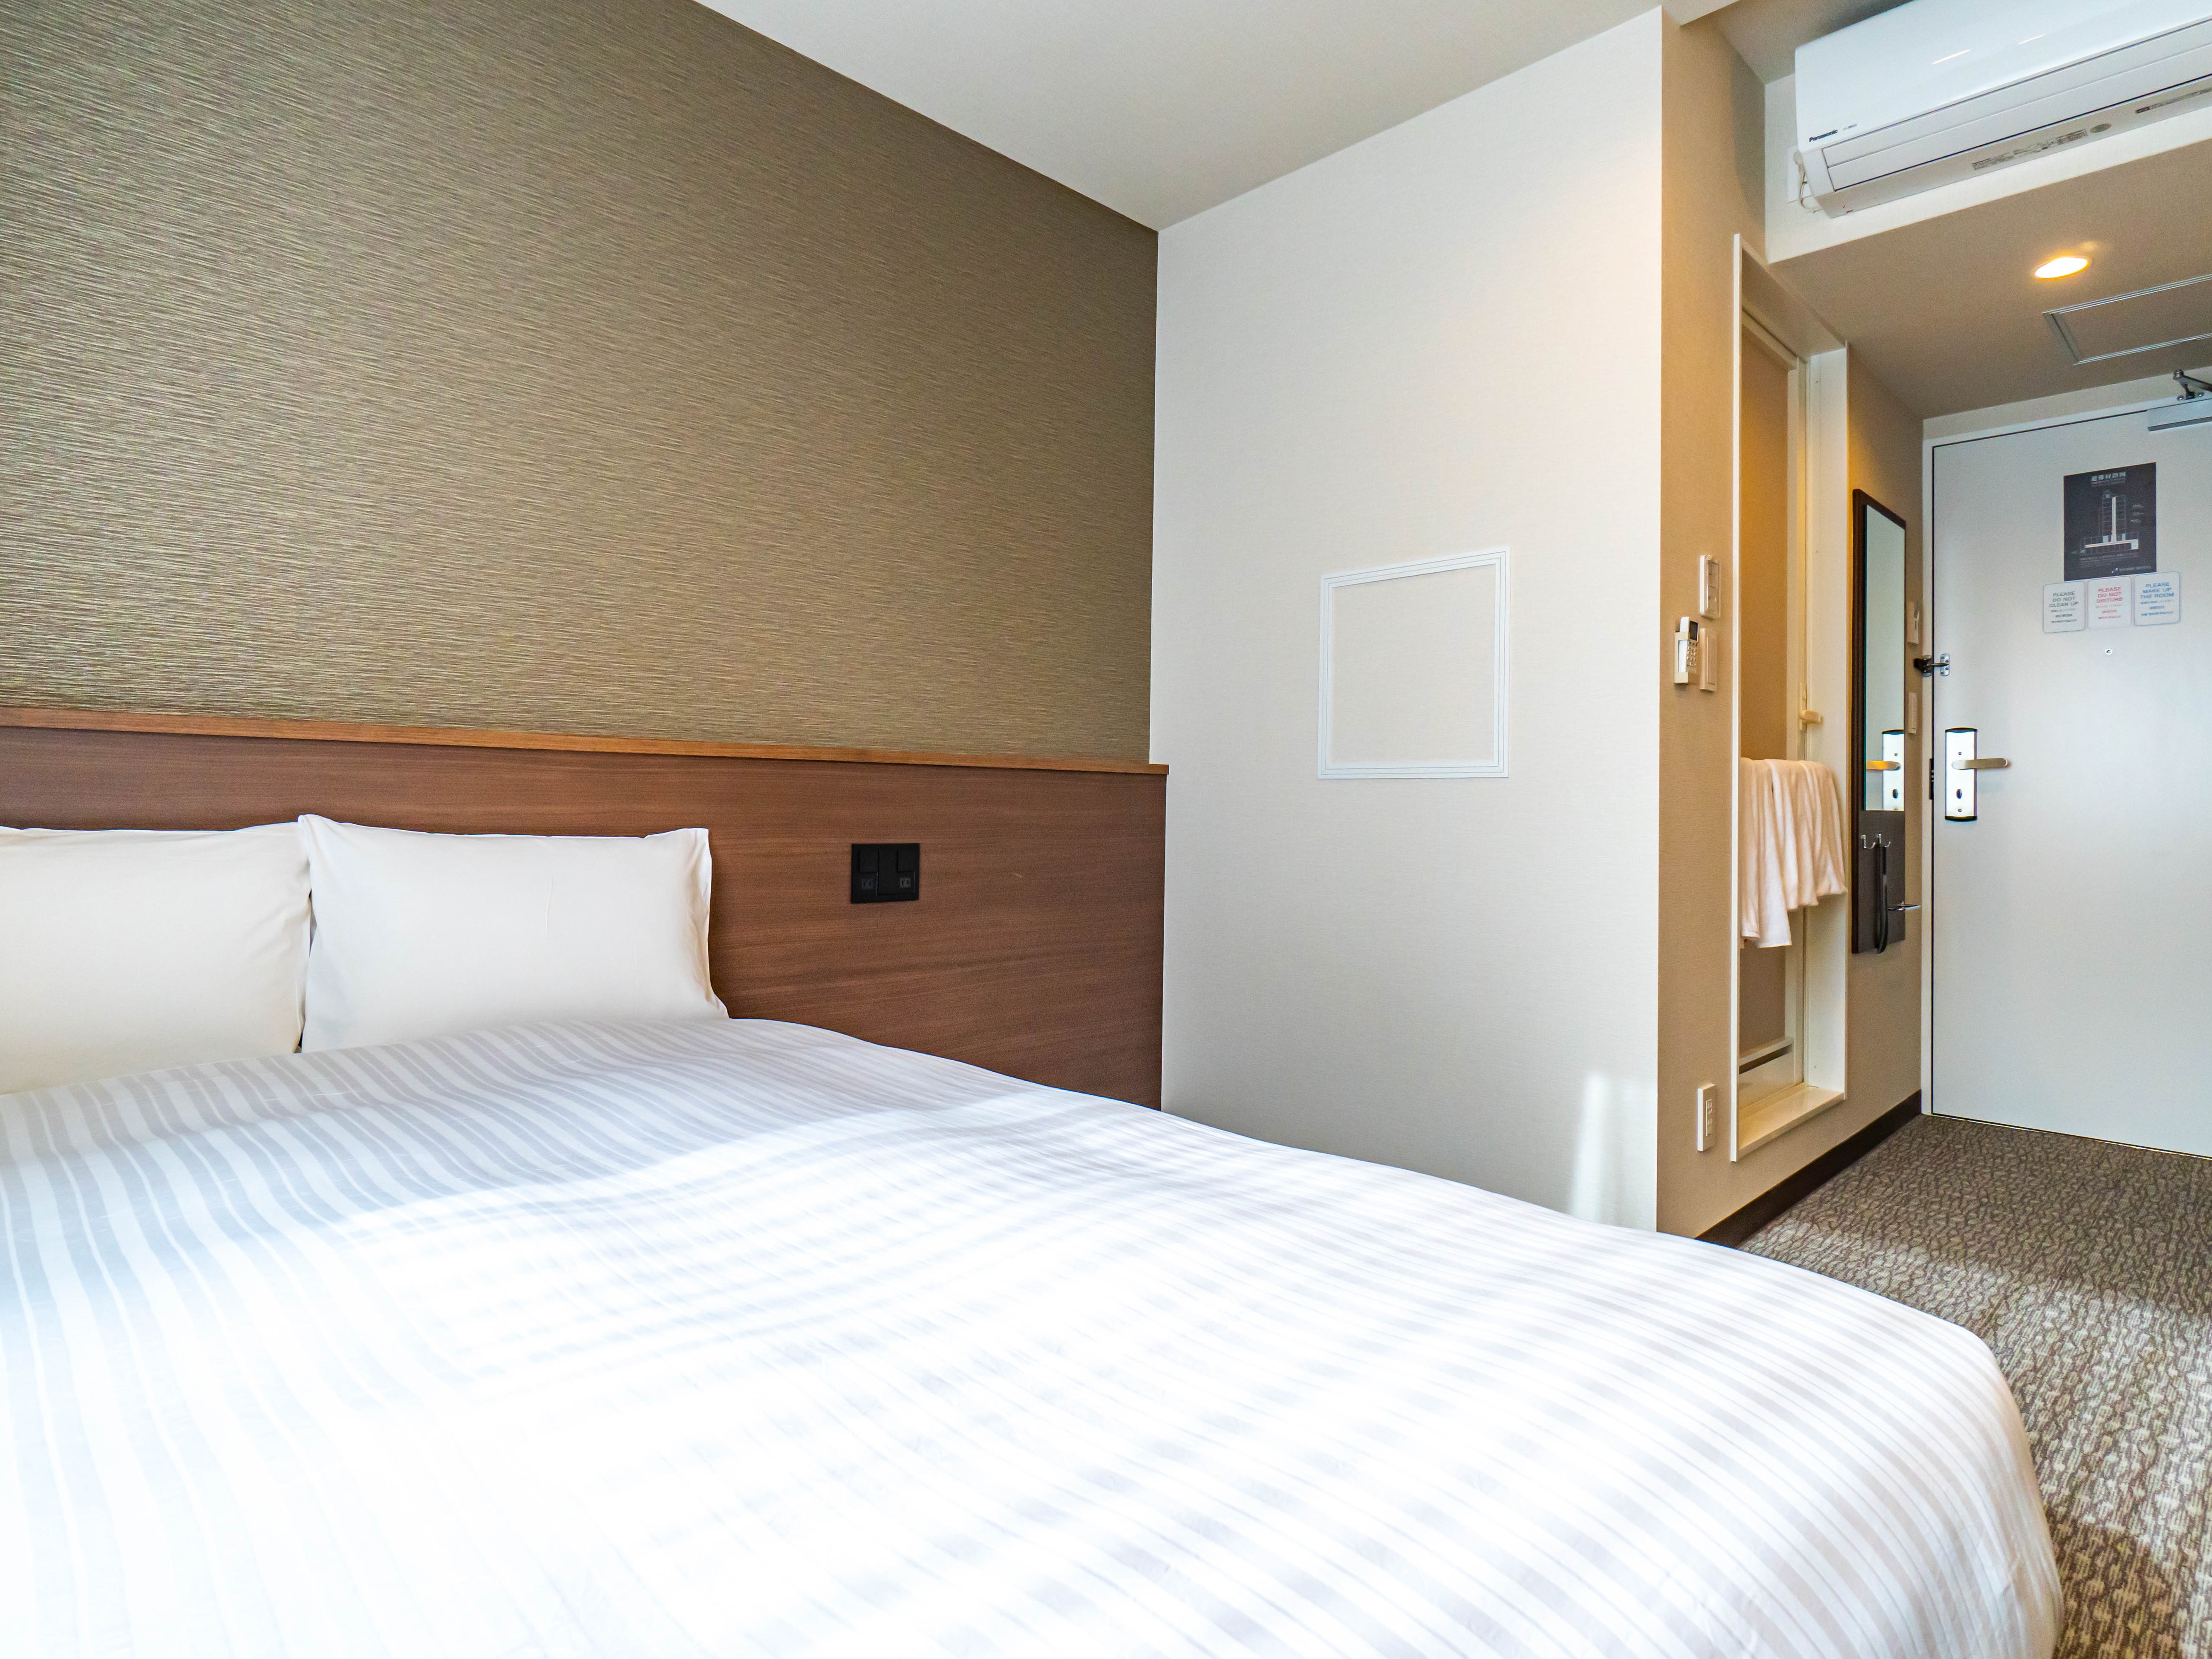 【スーペリアダブル】ベッドは国内一流ホテルでも愛用されている日本ベッドを利用しております。